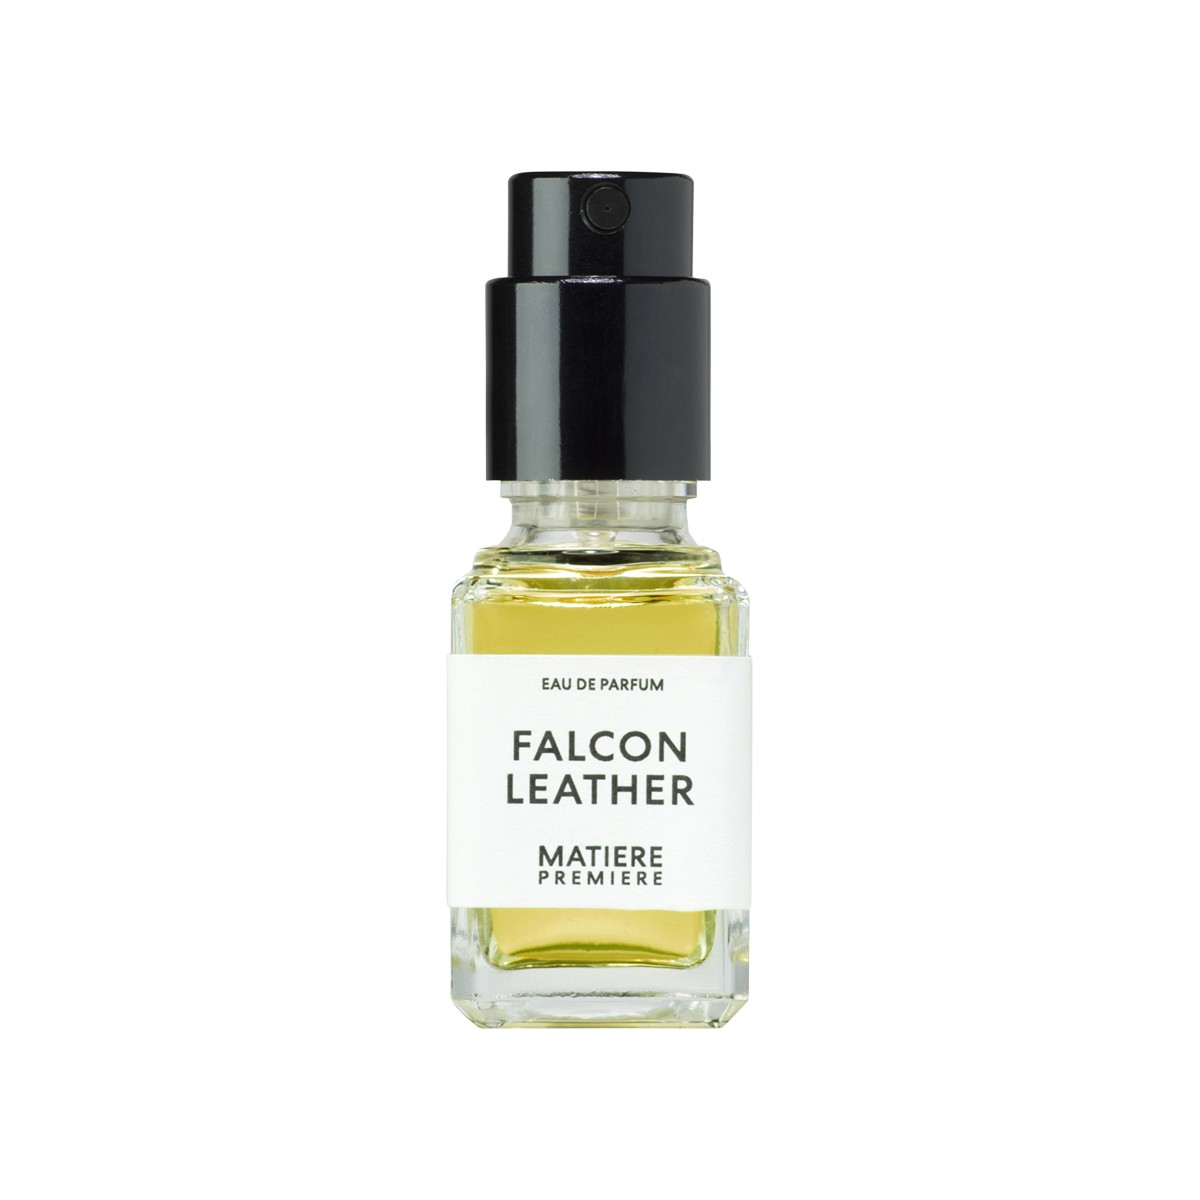 Matiere Premiere - Falcon Leather Eau de Parfum